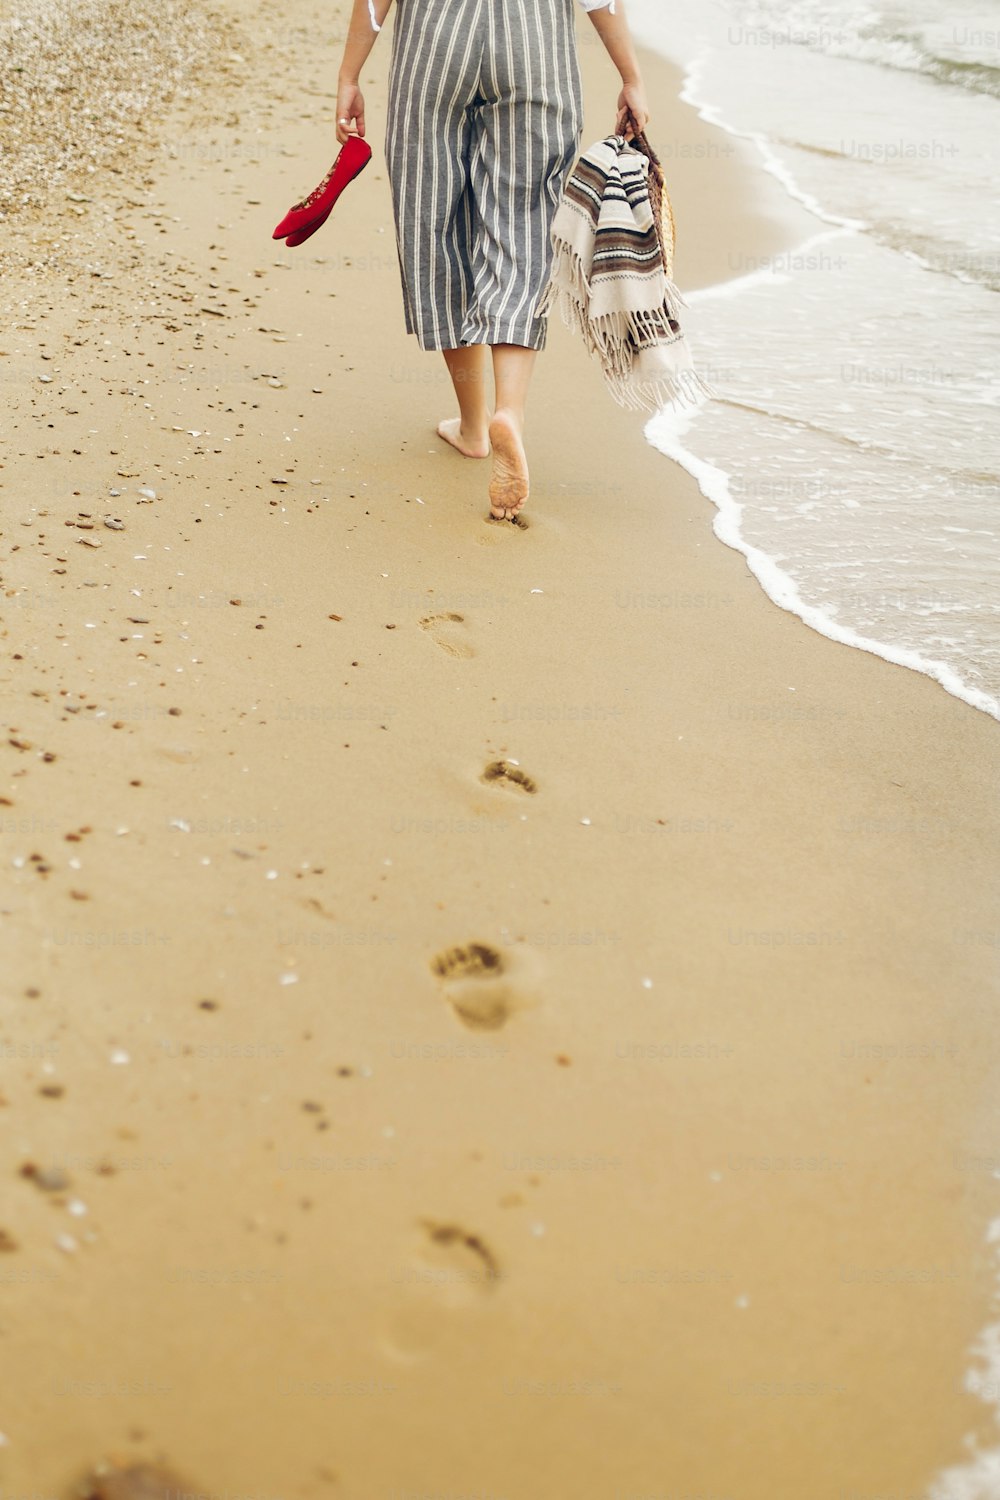 Femme marchant pieds nus sur la plage, vue arrière des jambes. Jeune fille se relaxant sur la plage de sable, marchant avec des chaussures et un sac à la main. Concept de vacances d’été